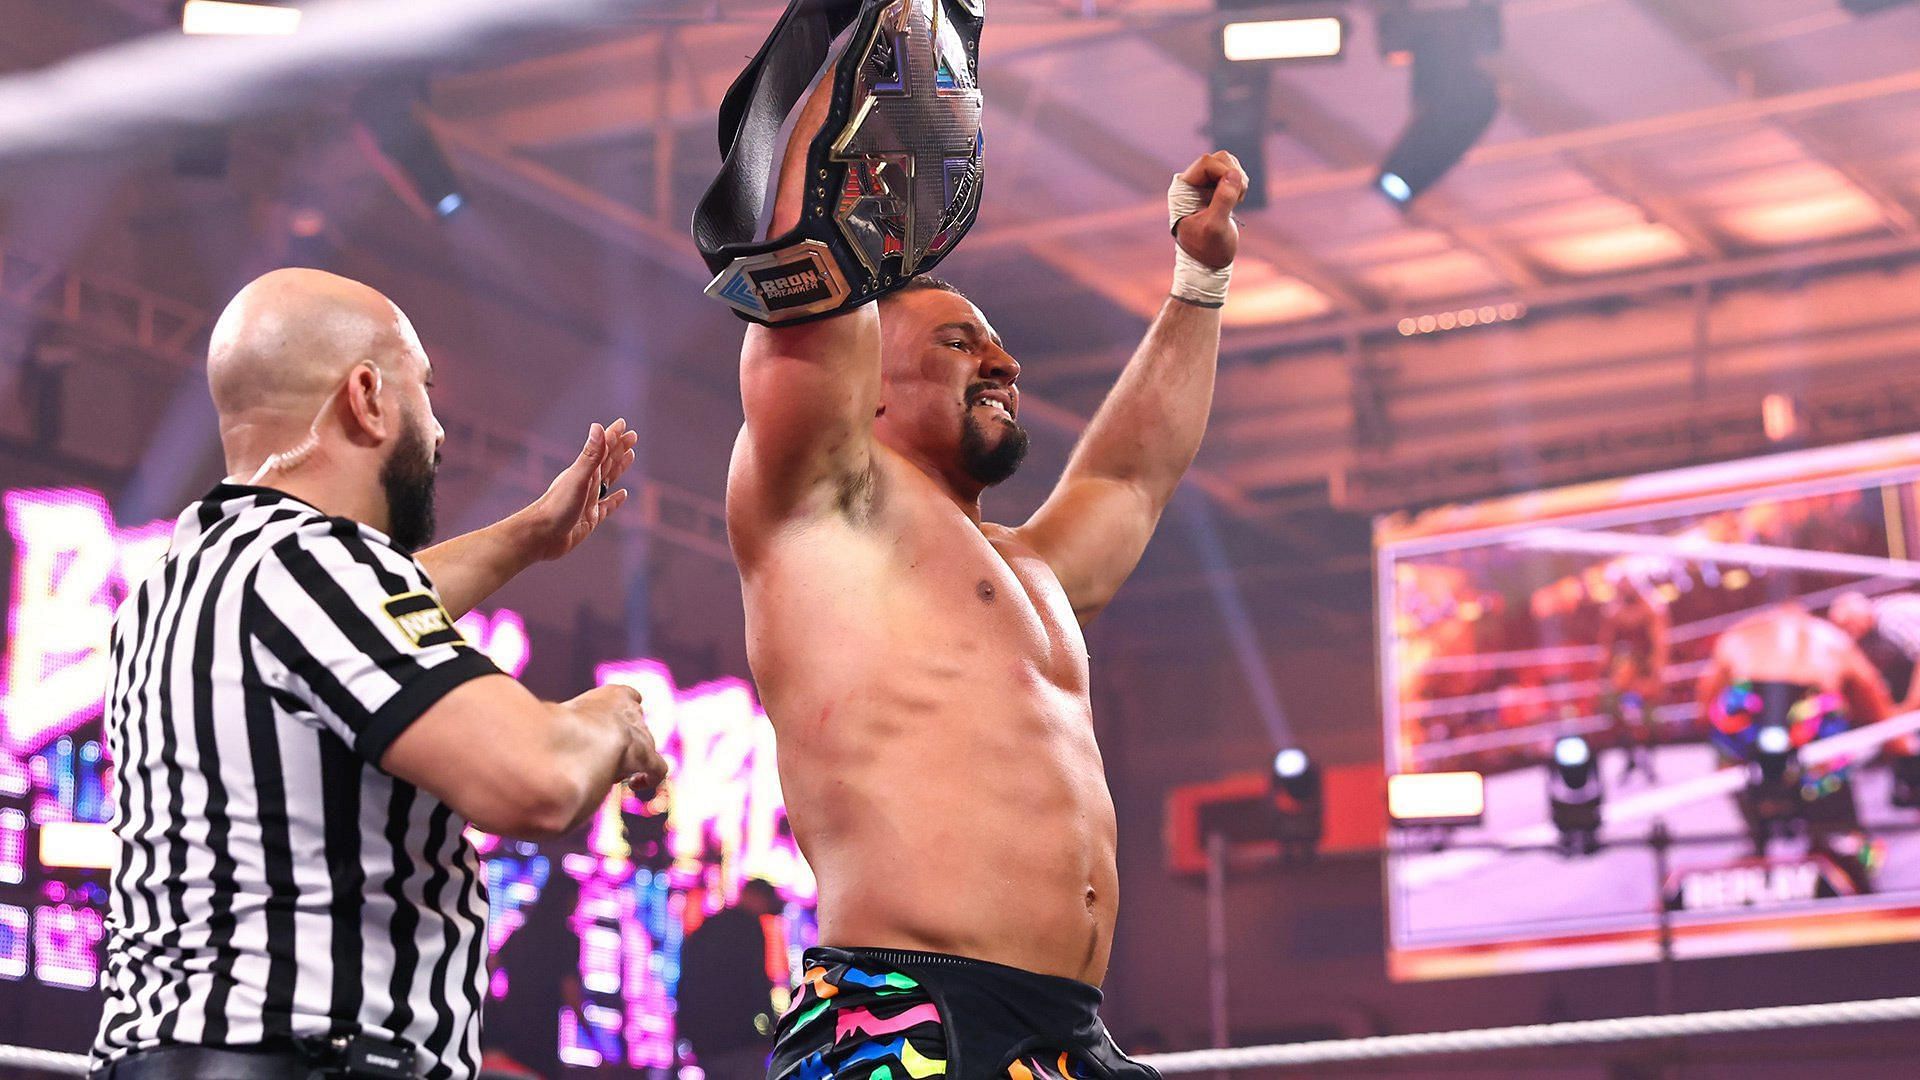 Bron Breakker will soon face Carmello Hayes on WWE NXT